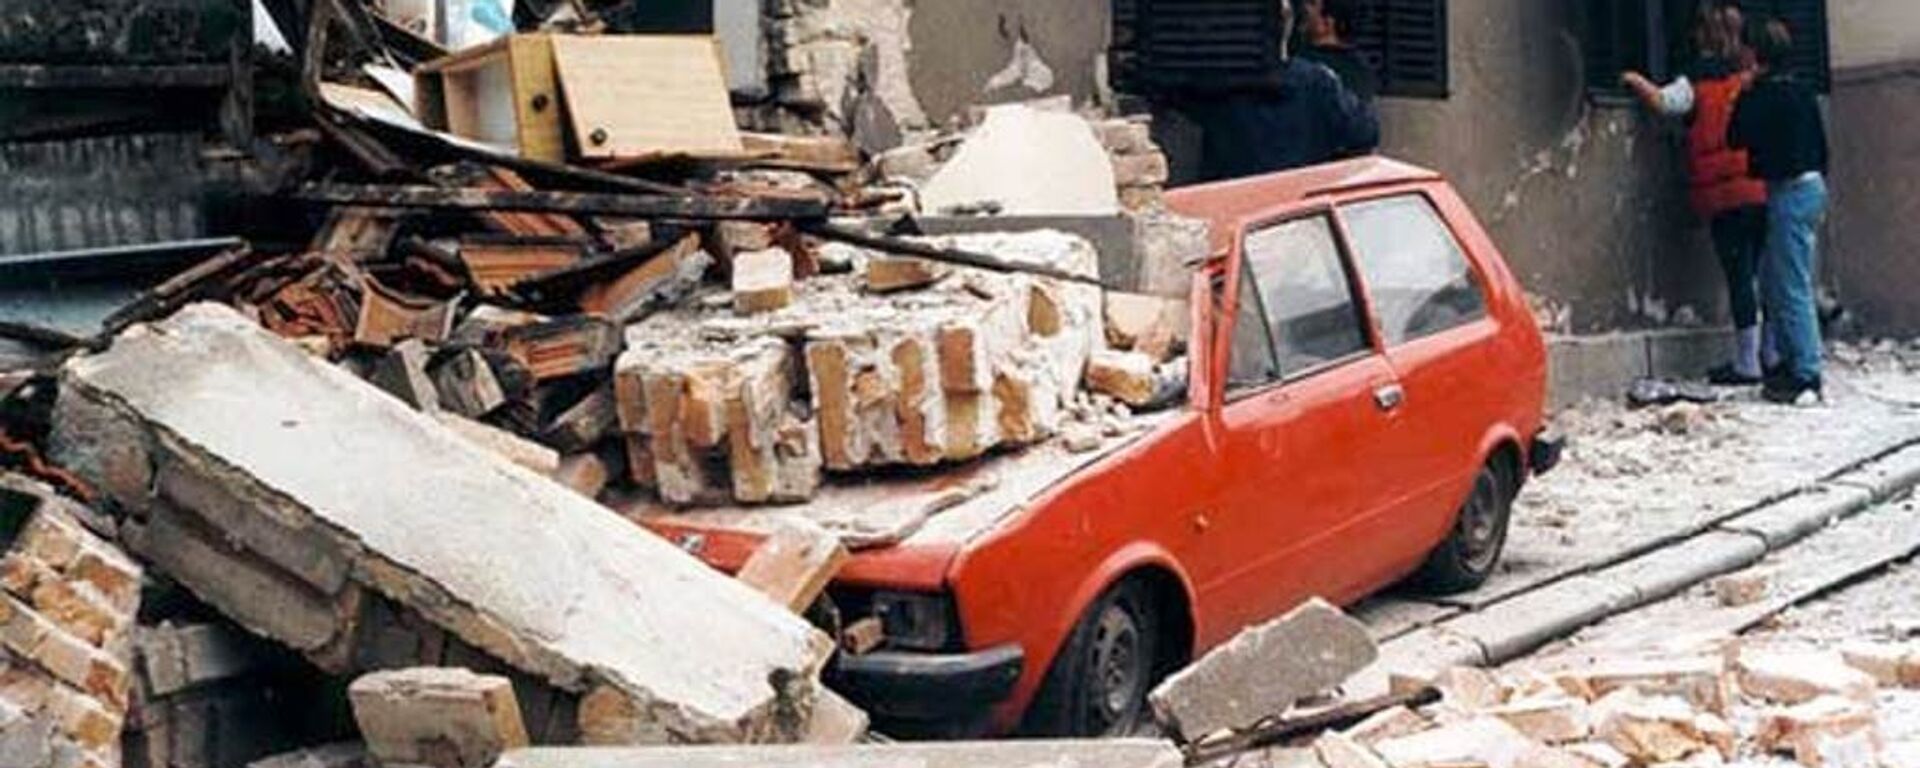 Улица Београда након налета засипања бомбама НАТО-а 1999. године - Sputnik Србија, 1920, 23.03.2019